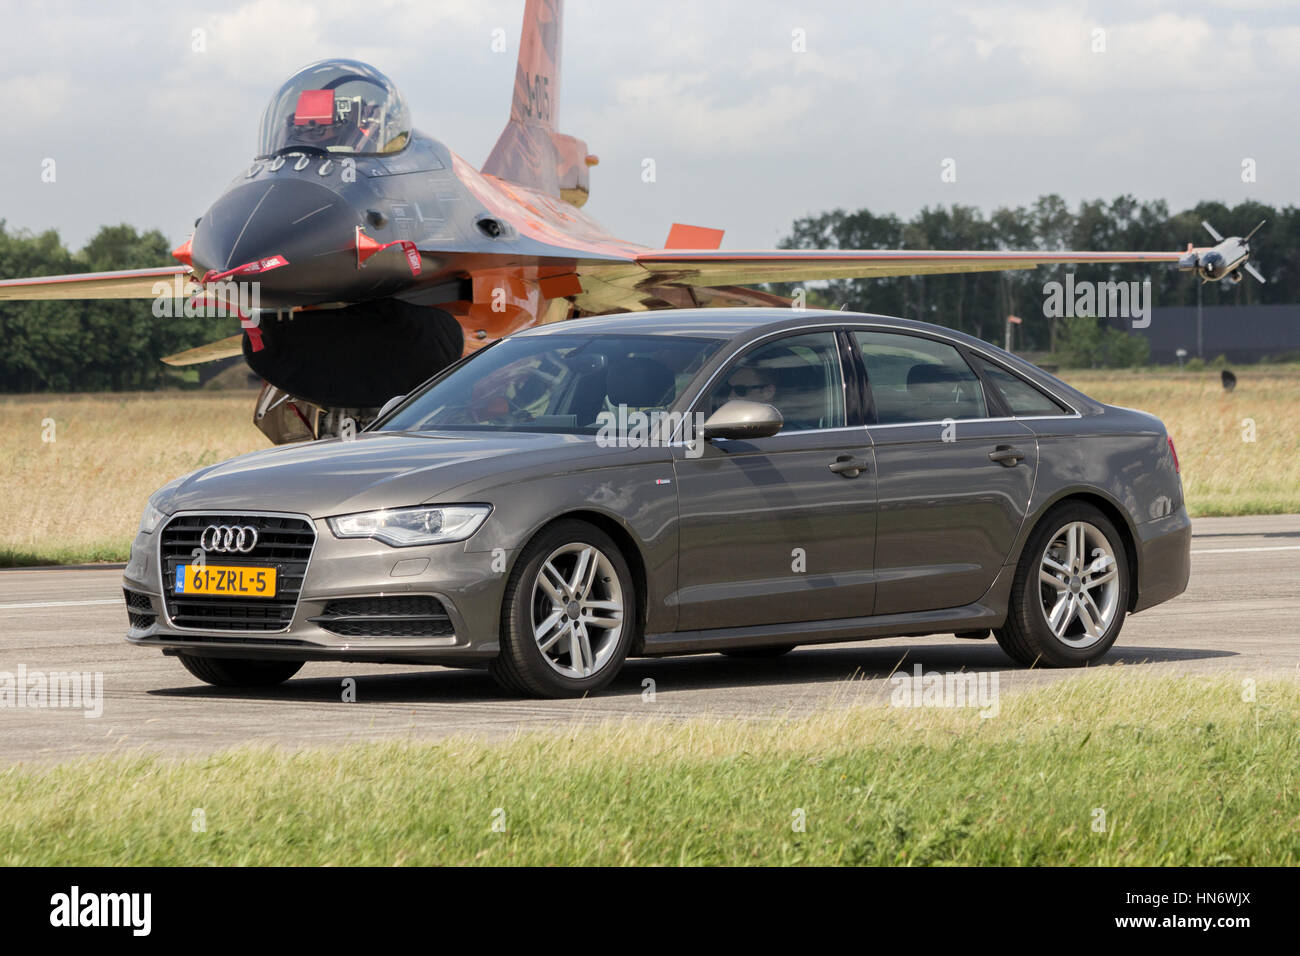 VOLKEL, Niederlande - 15. Juni 2013: Audi A6 Limousine fahren vor einem niederländischen f-16 Kampfjet während der königlichen niederländischen Luftwaffe Tag der offenen Tür. Stockfoto